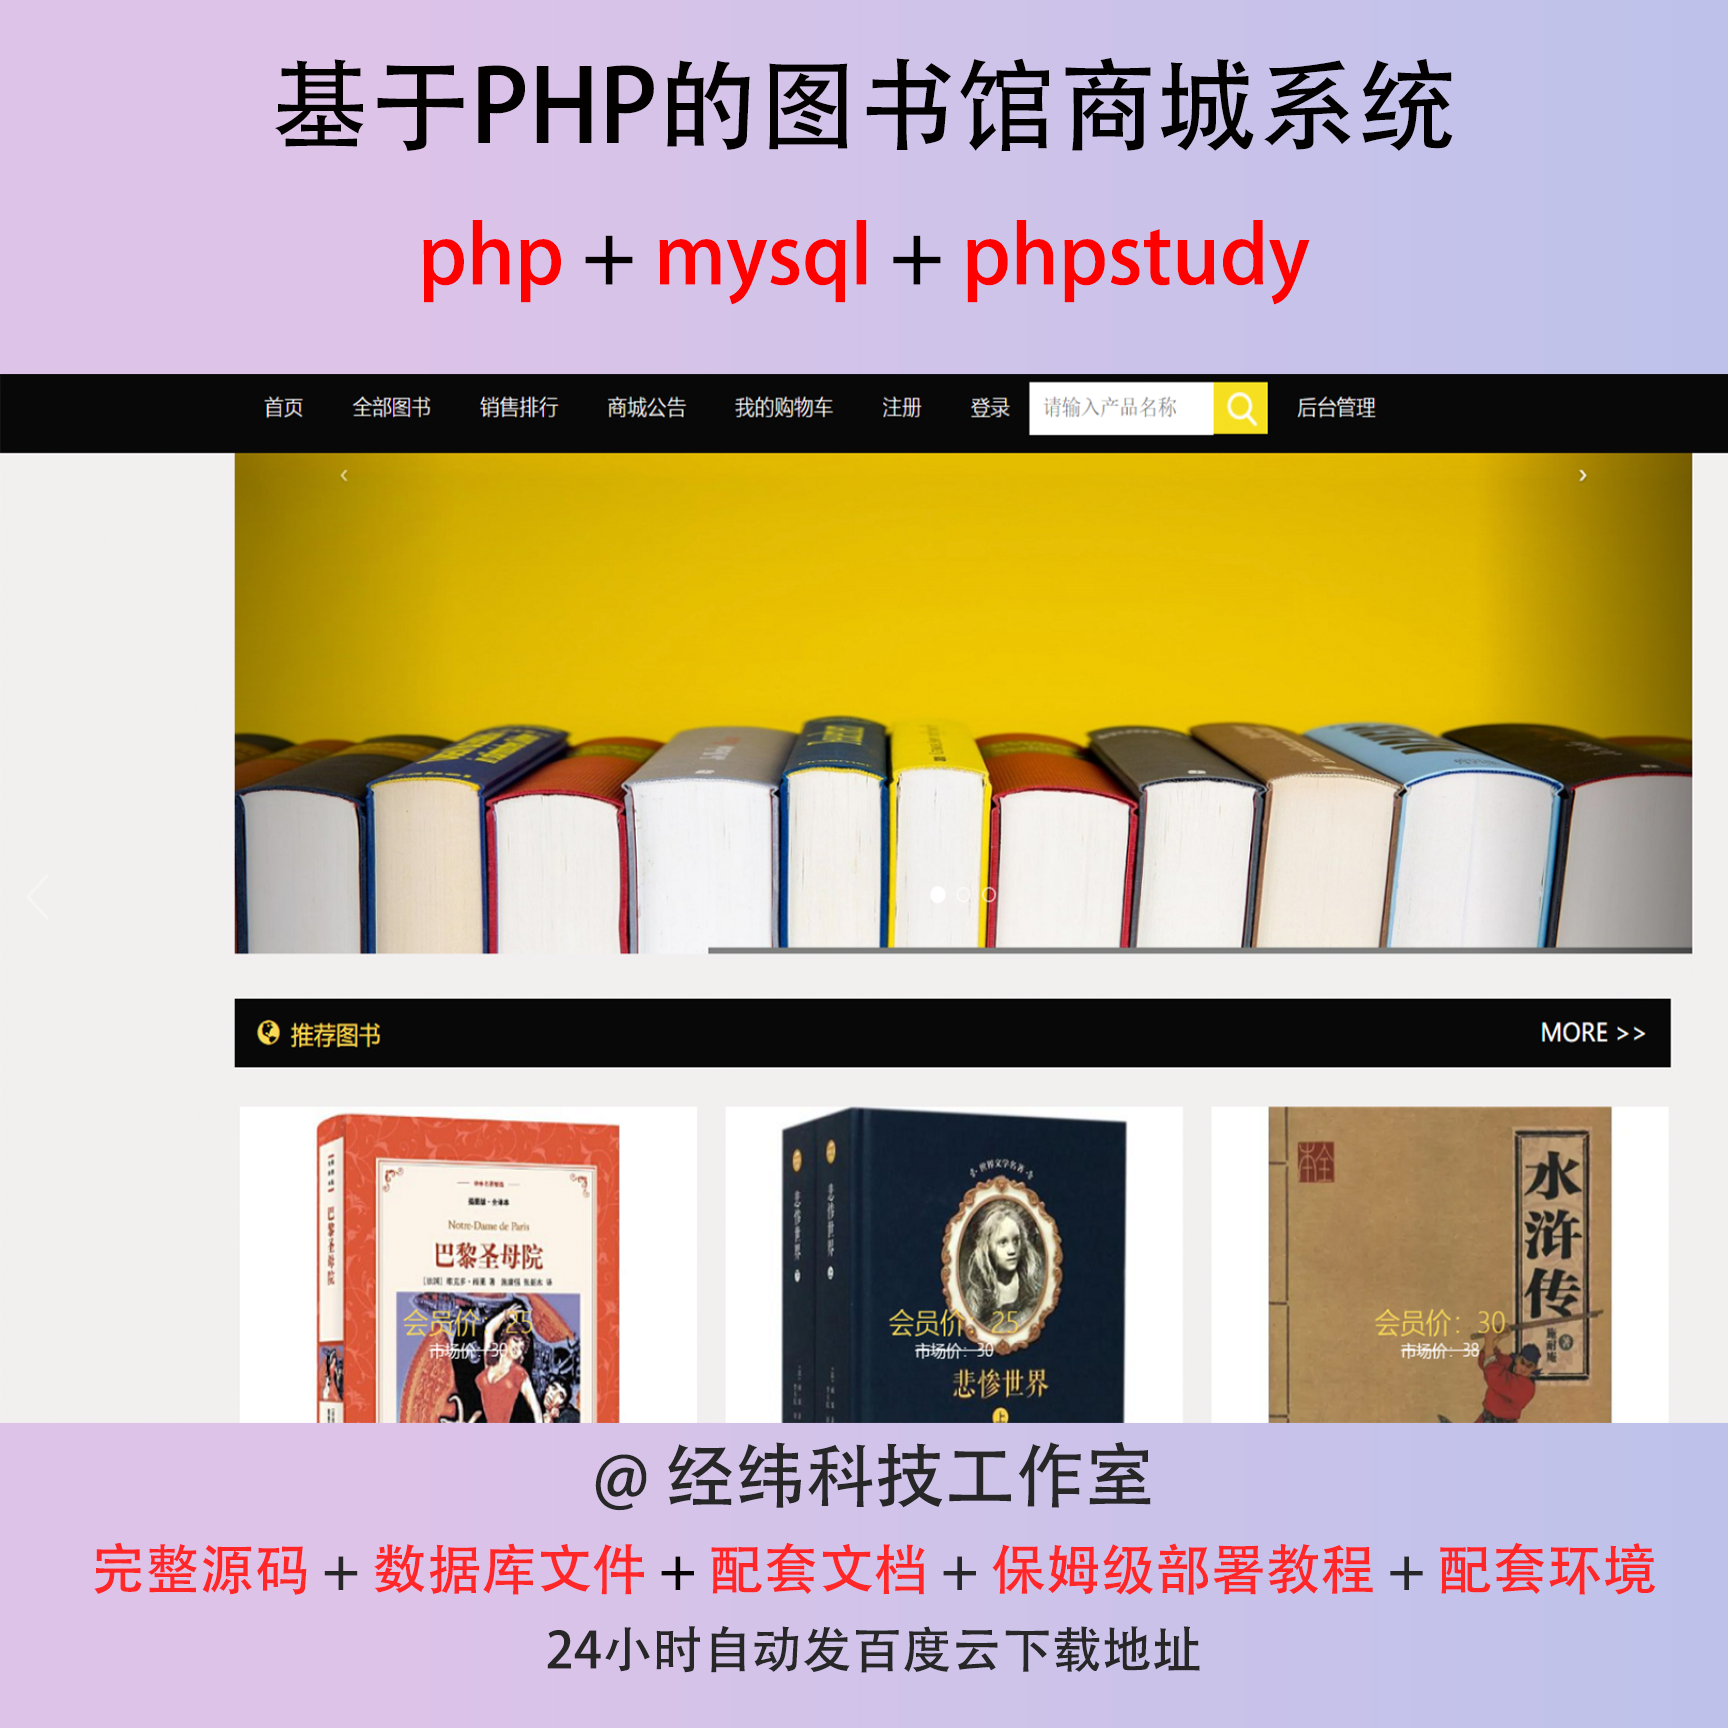 php 图书馆商城商店购物售卖销售系统在线网上平台网站程序源代码